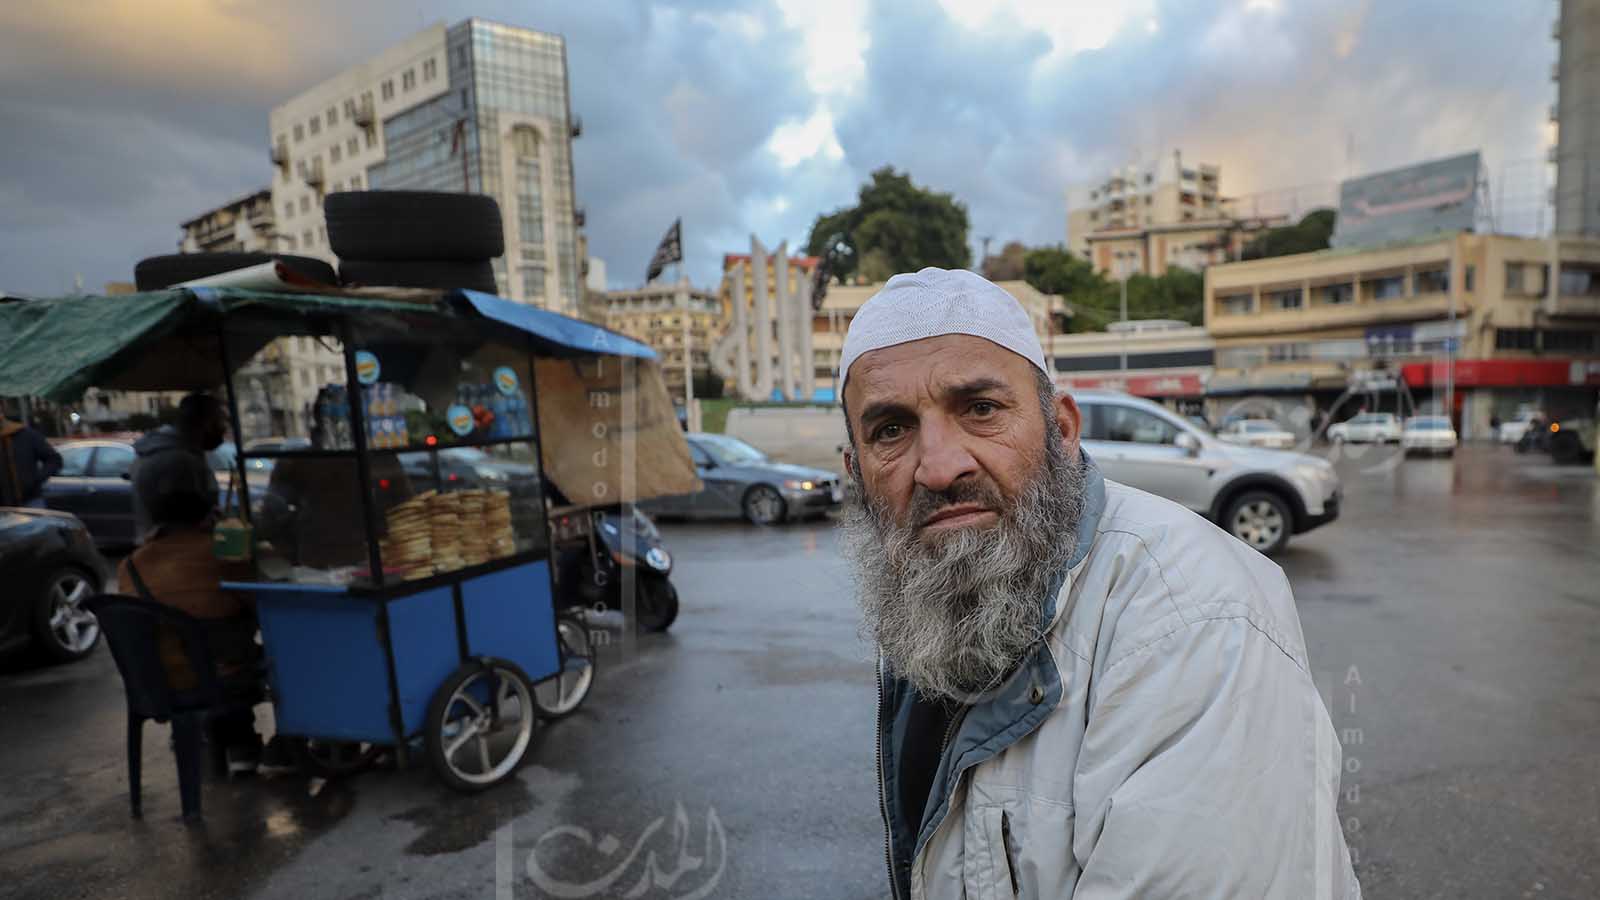 فقر وفوضى في طرابلس: المحافظ والمجلس البلدي في كيدياتهم